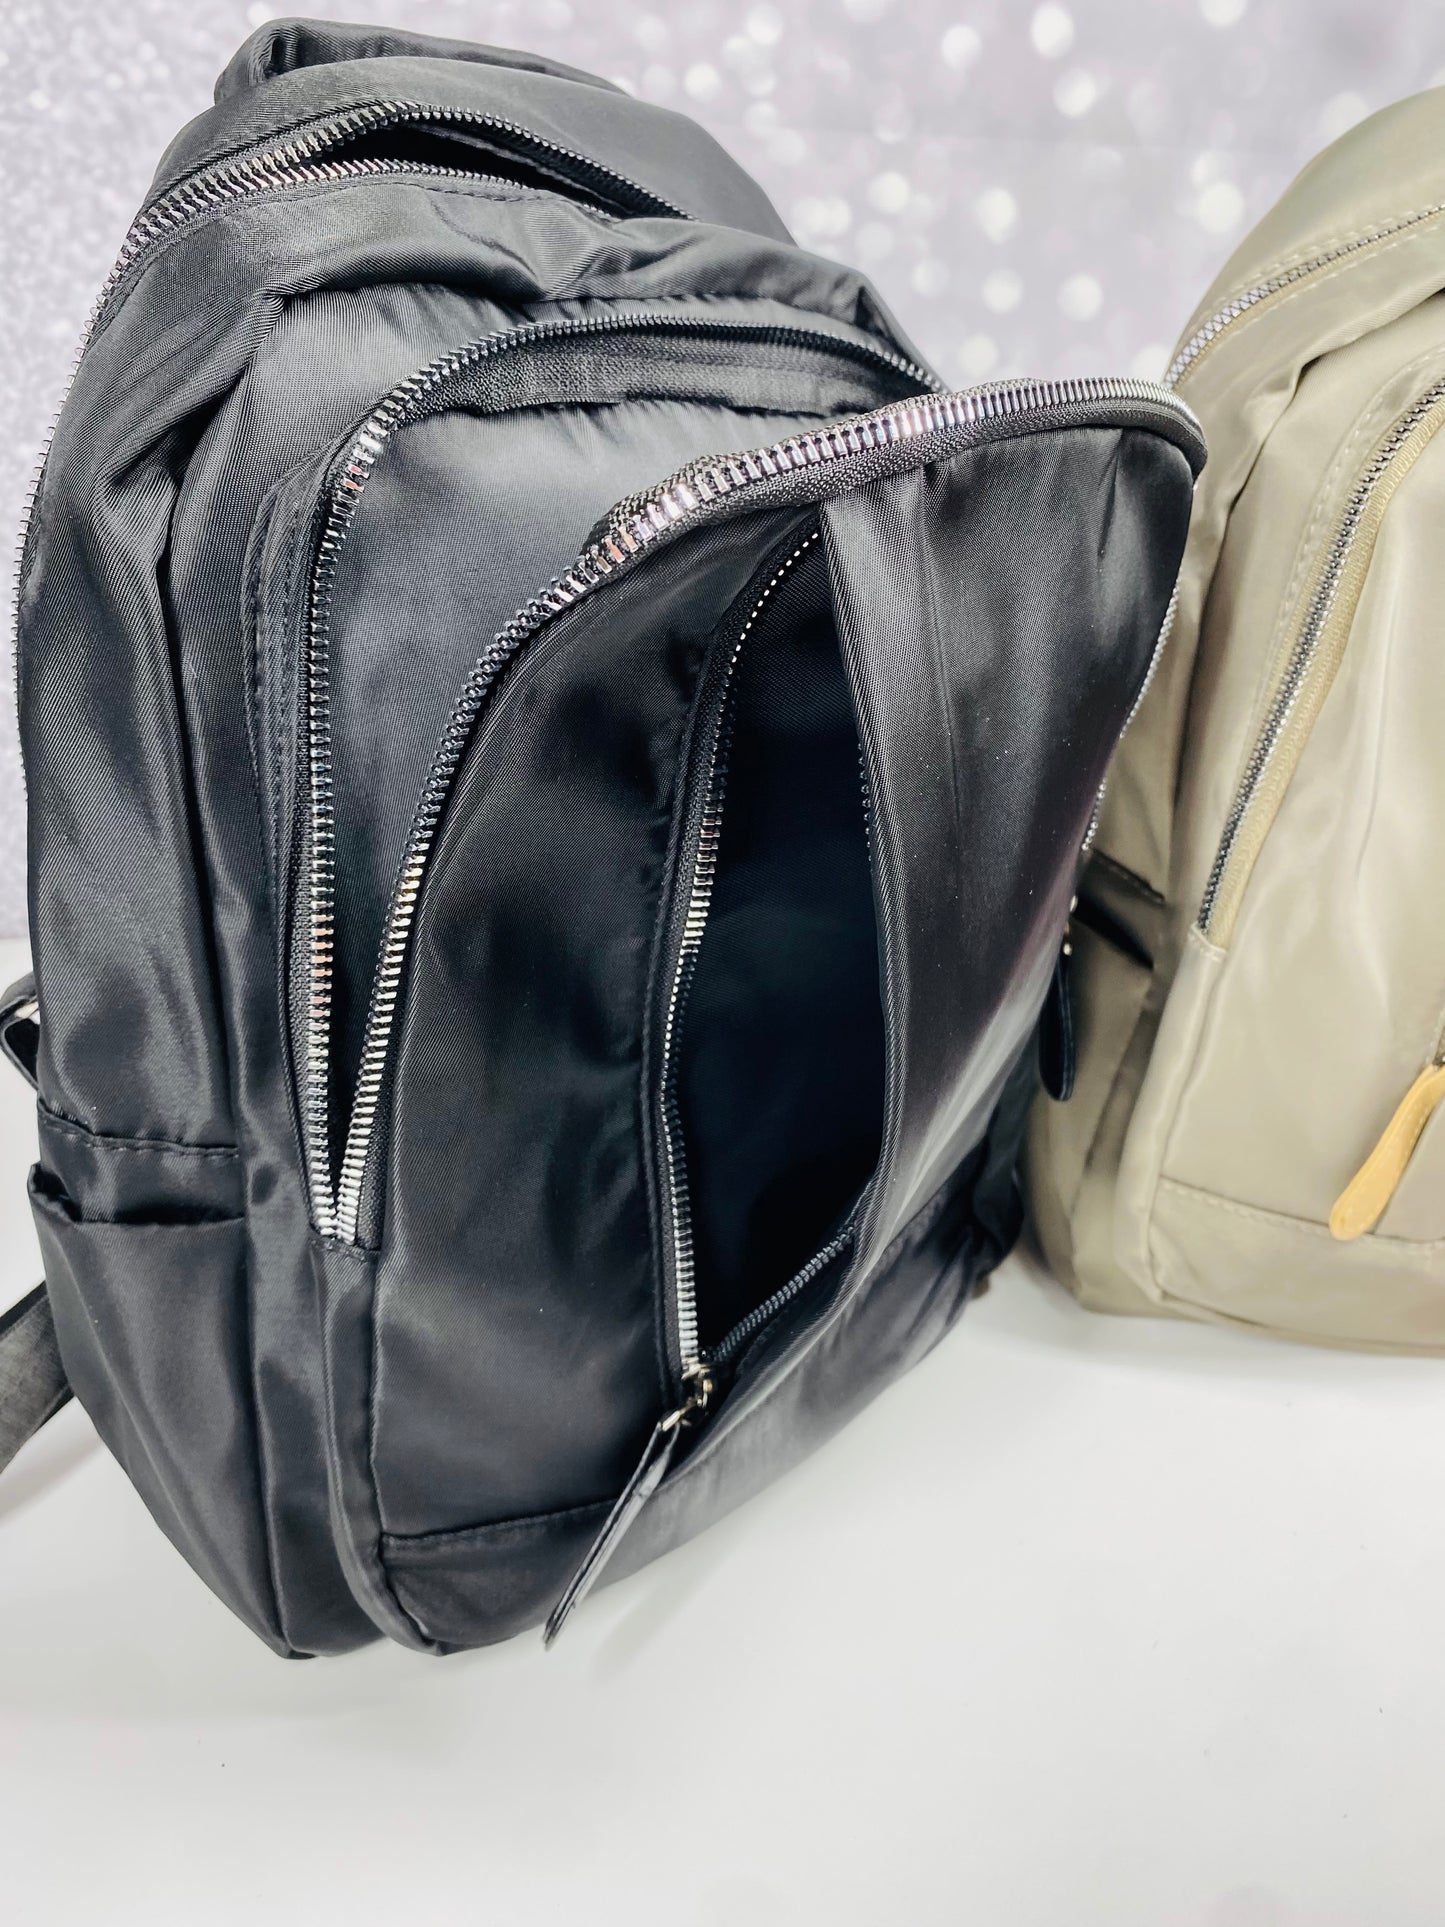 The Katelynn Backpack Preorder